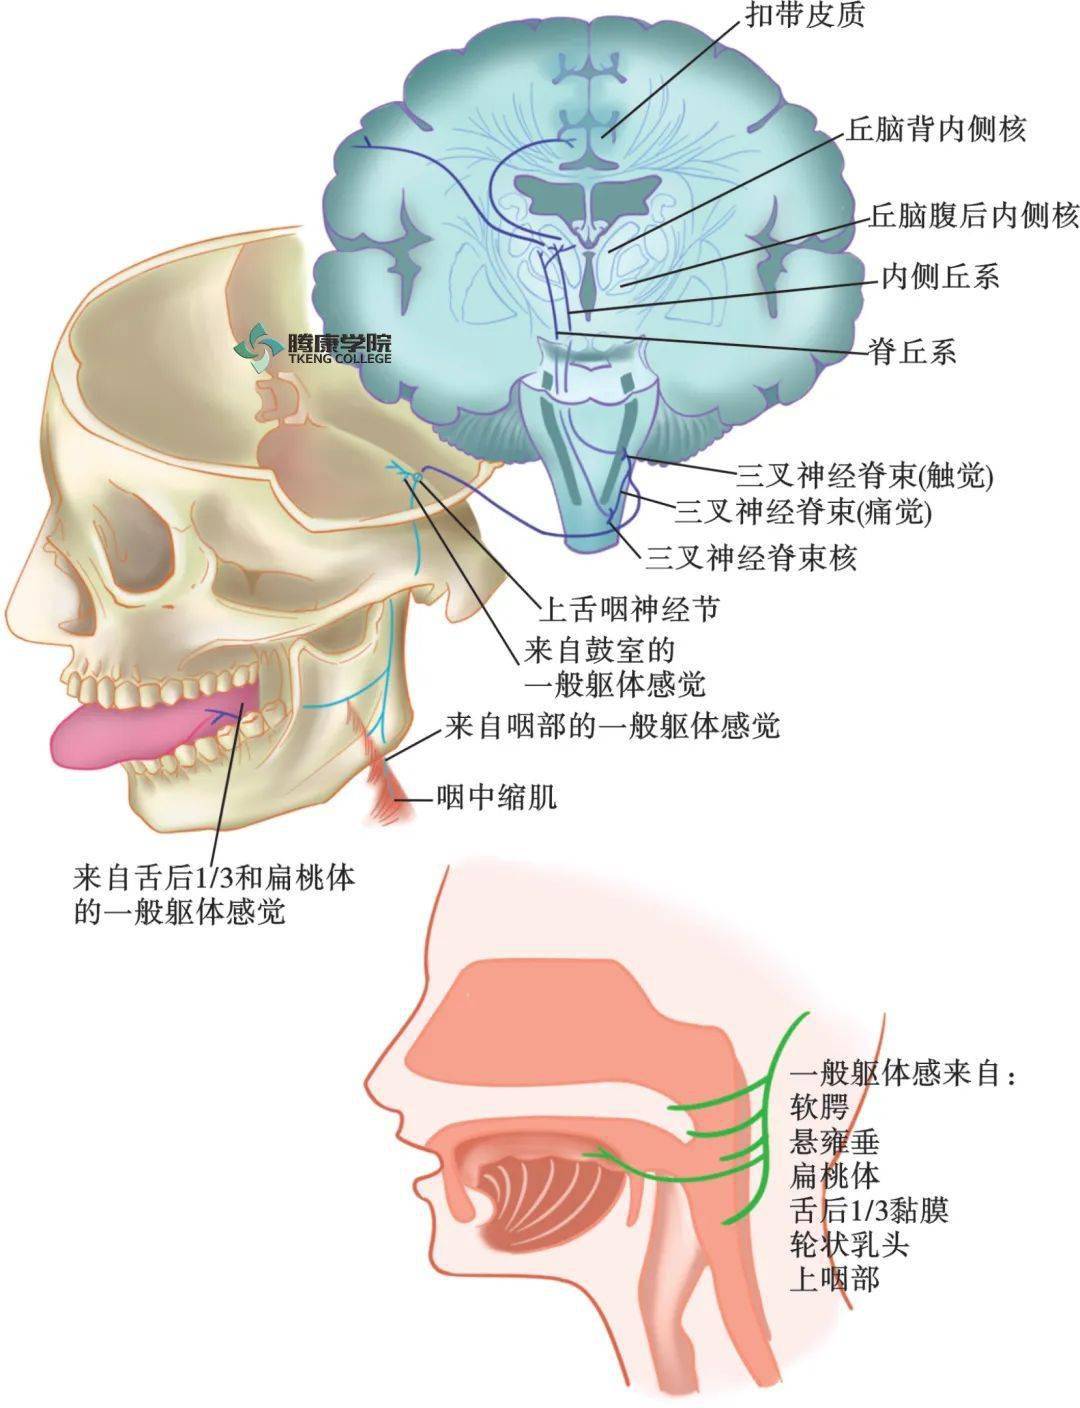 舌神经位置图片